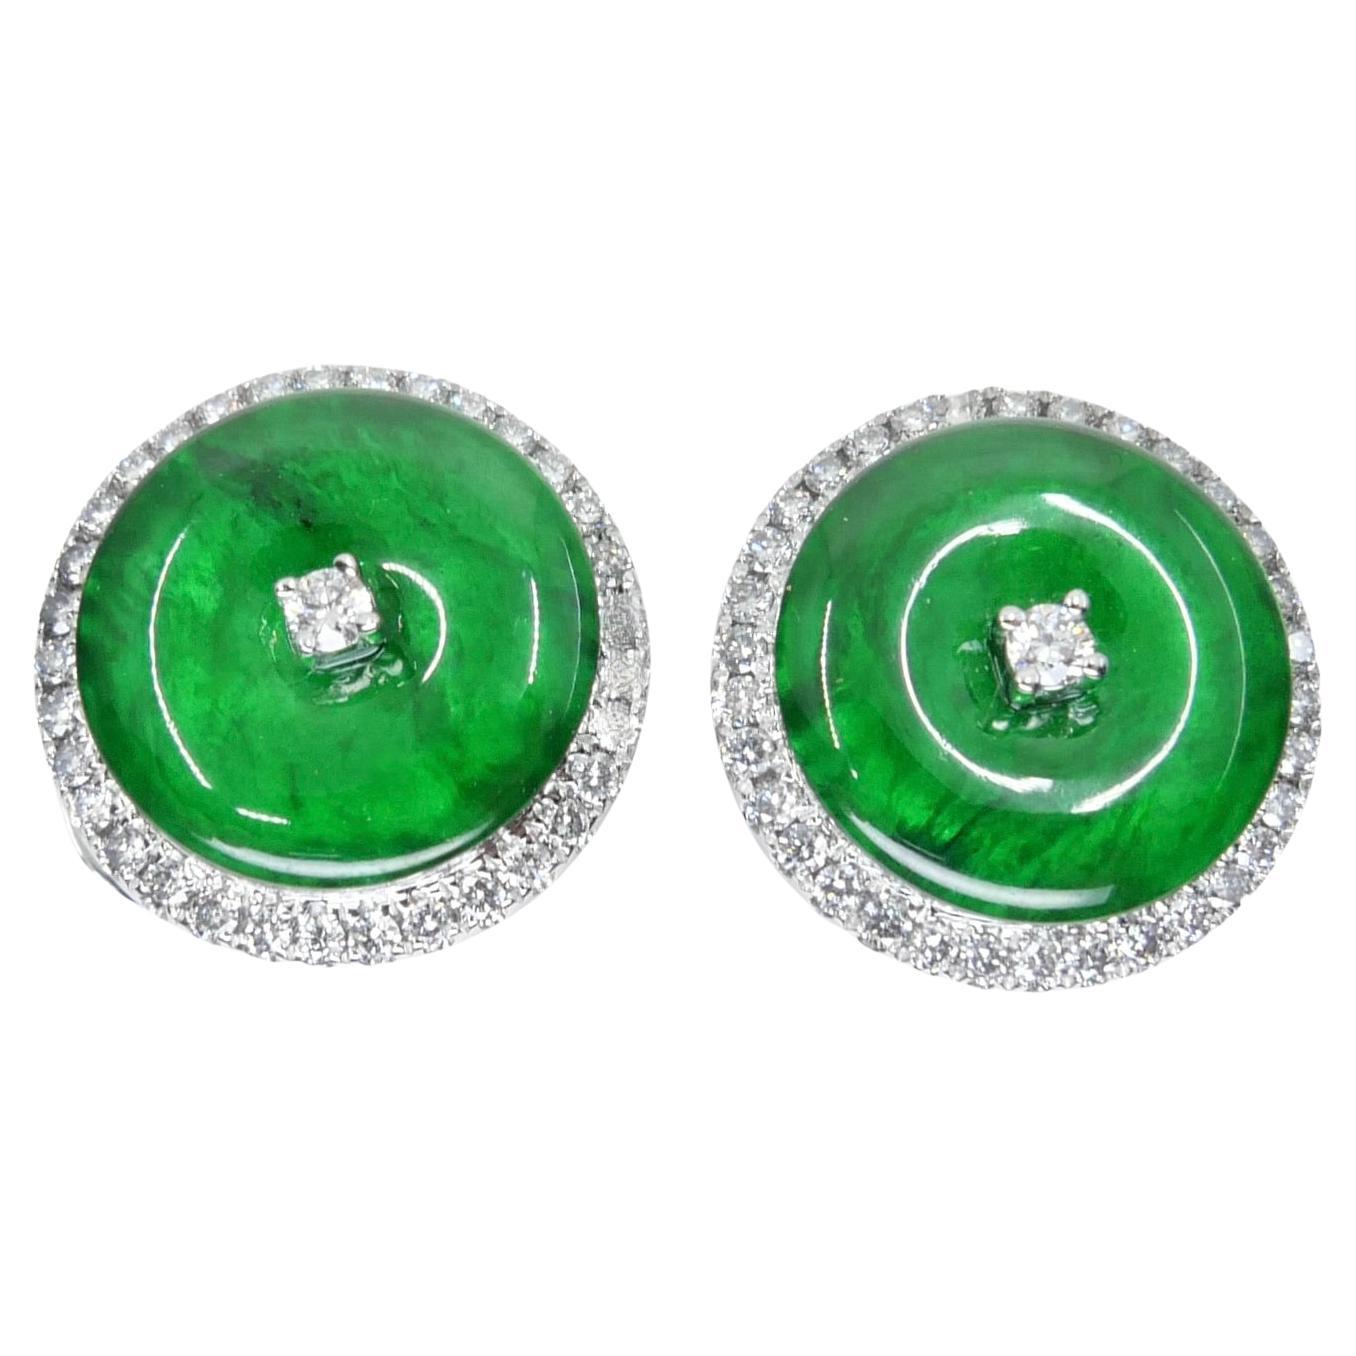 Boucles d'oreilles en jade et diamant certifiées naturelles de type A. Couleur vert pomme